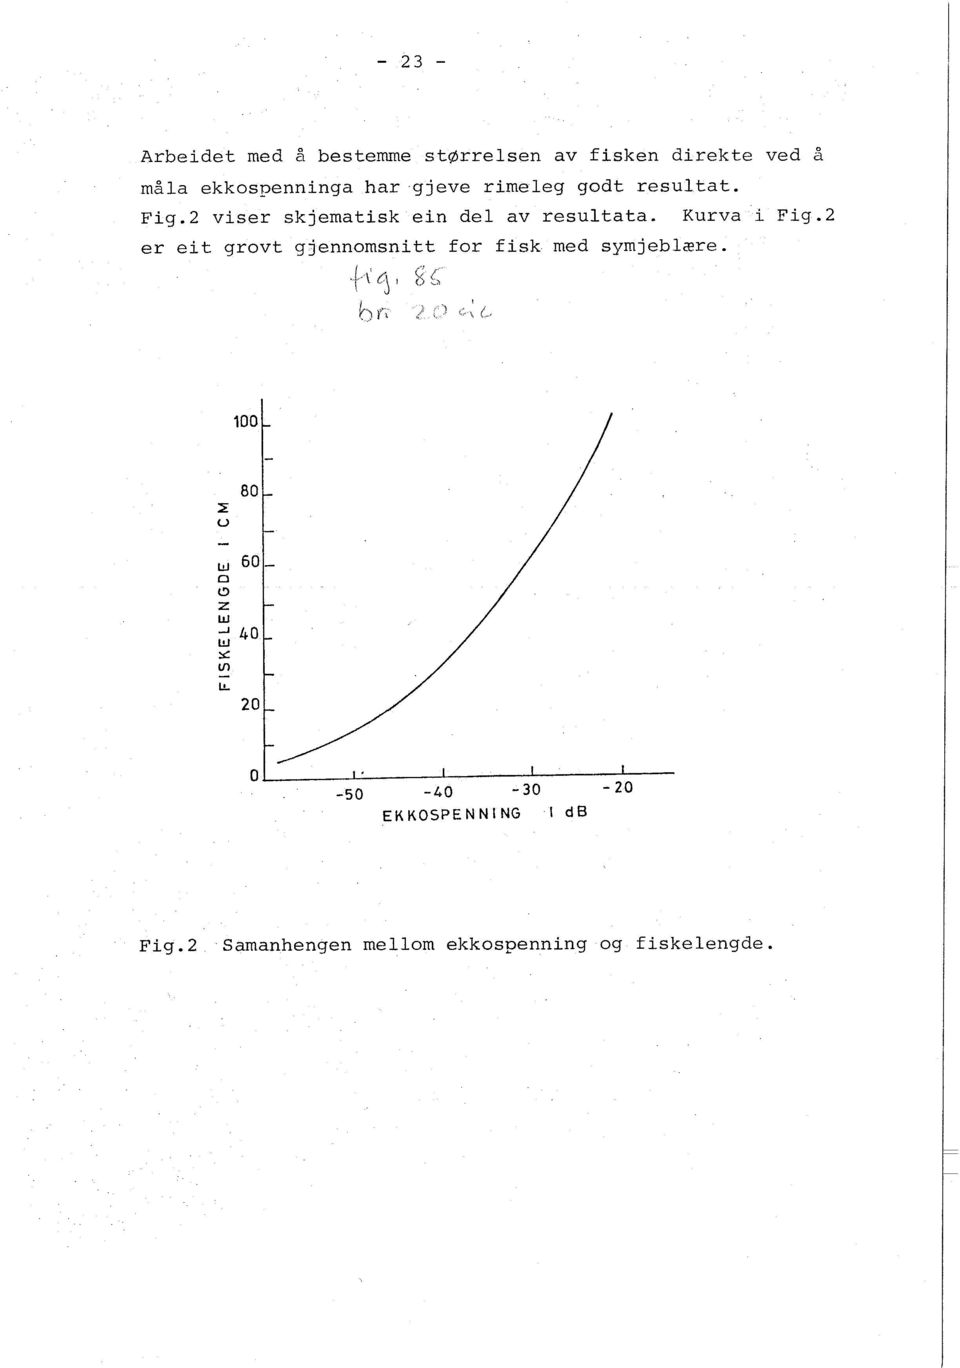 Kurva i Fig.2 er eit grovt gjennomsnitt for fisk med syrnjeblzre.